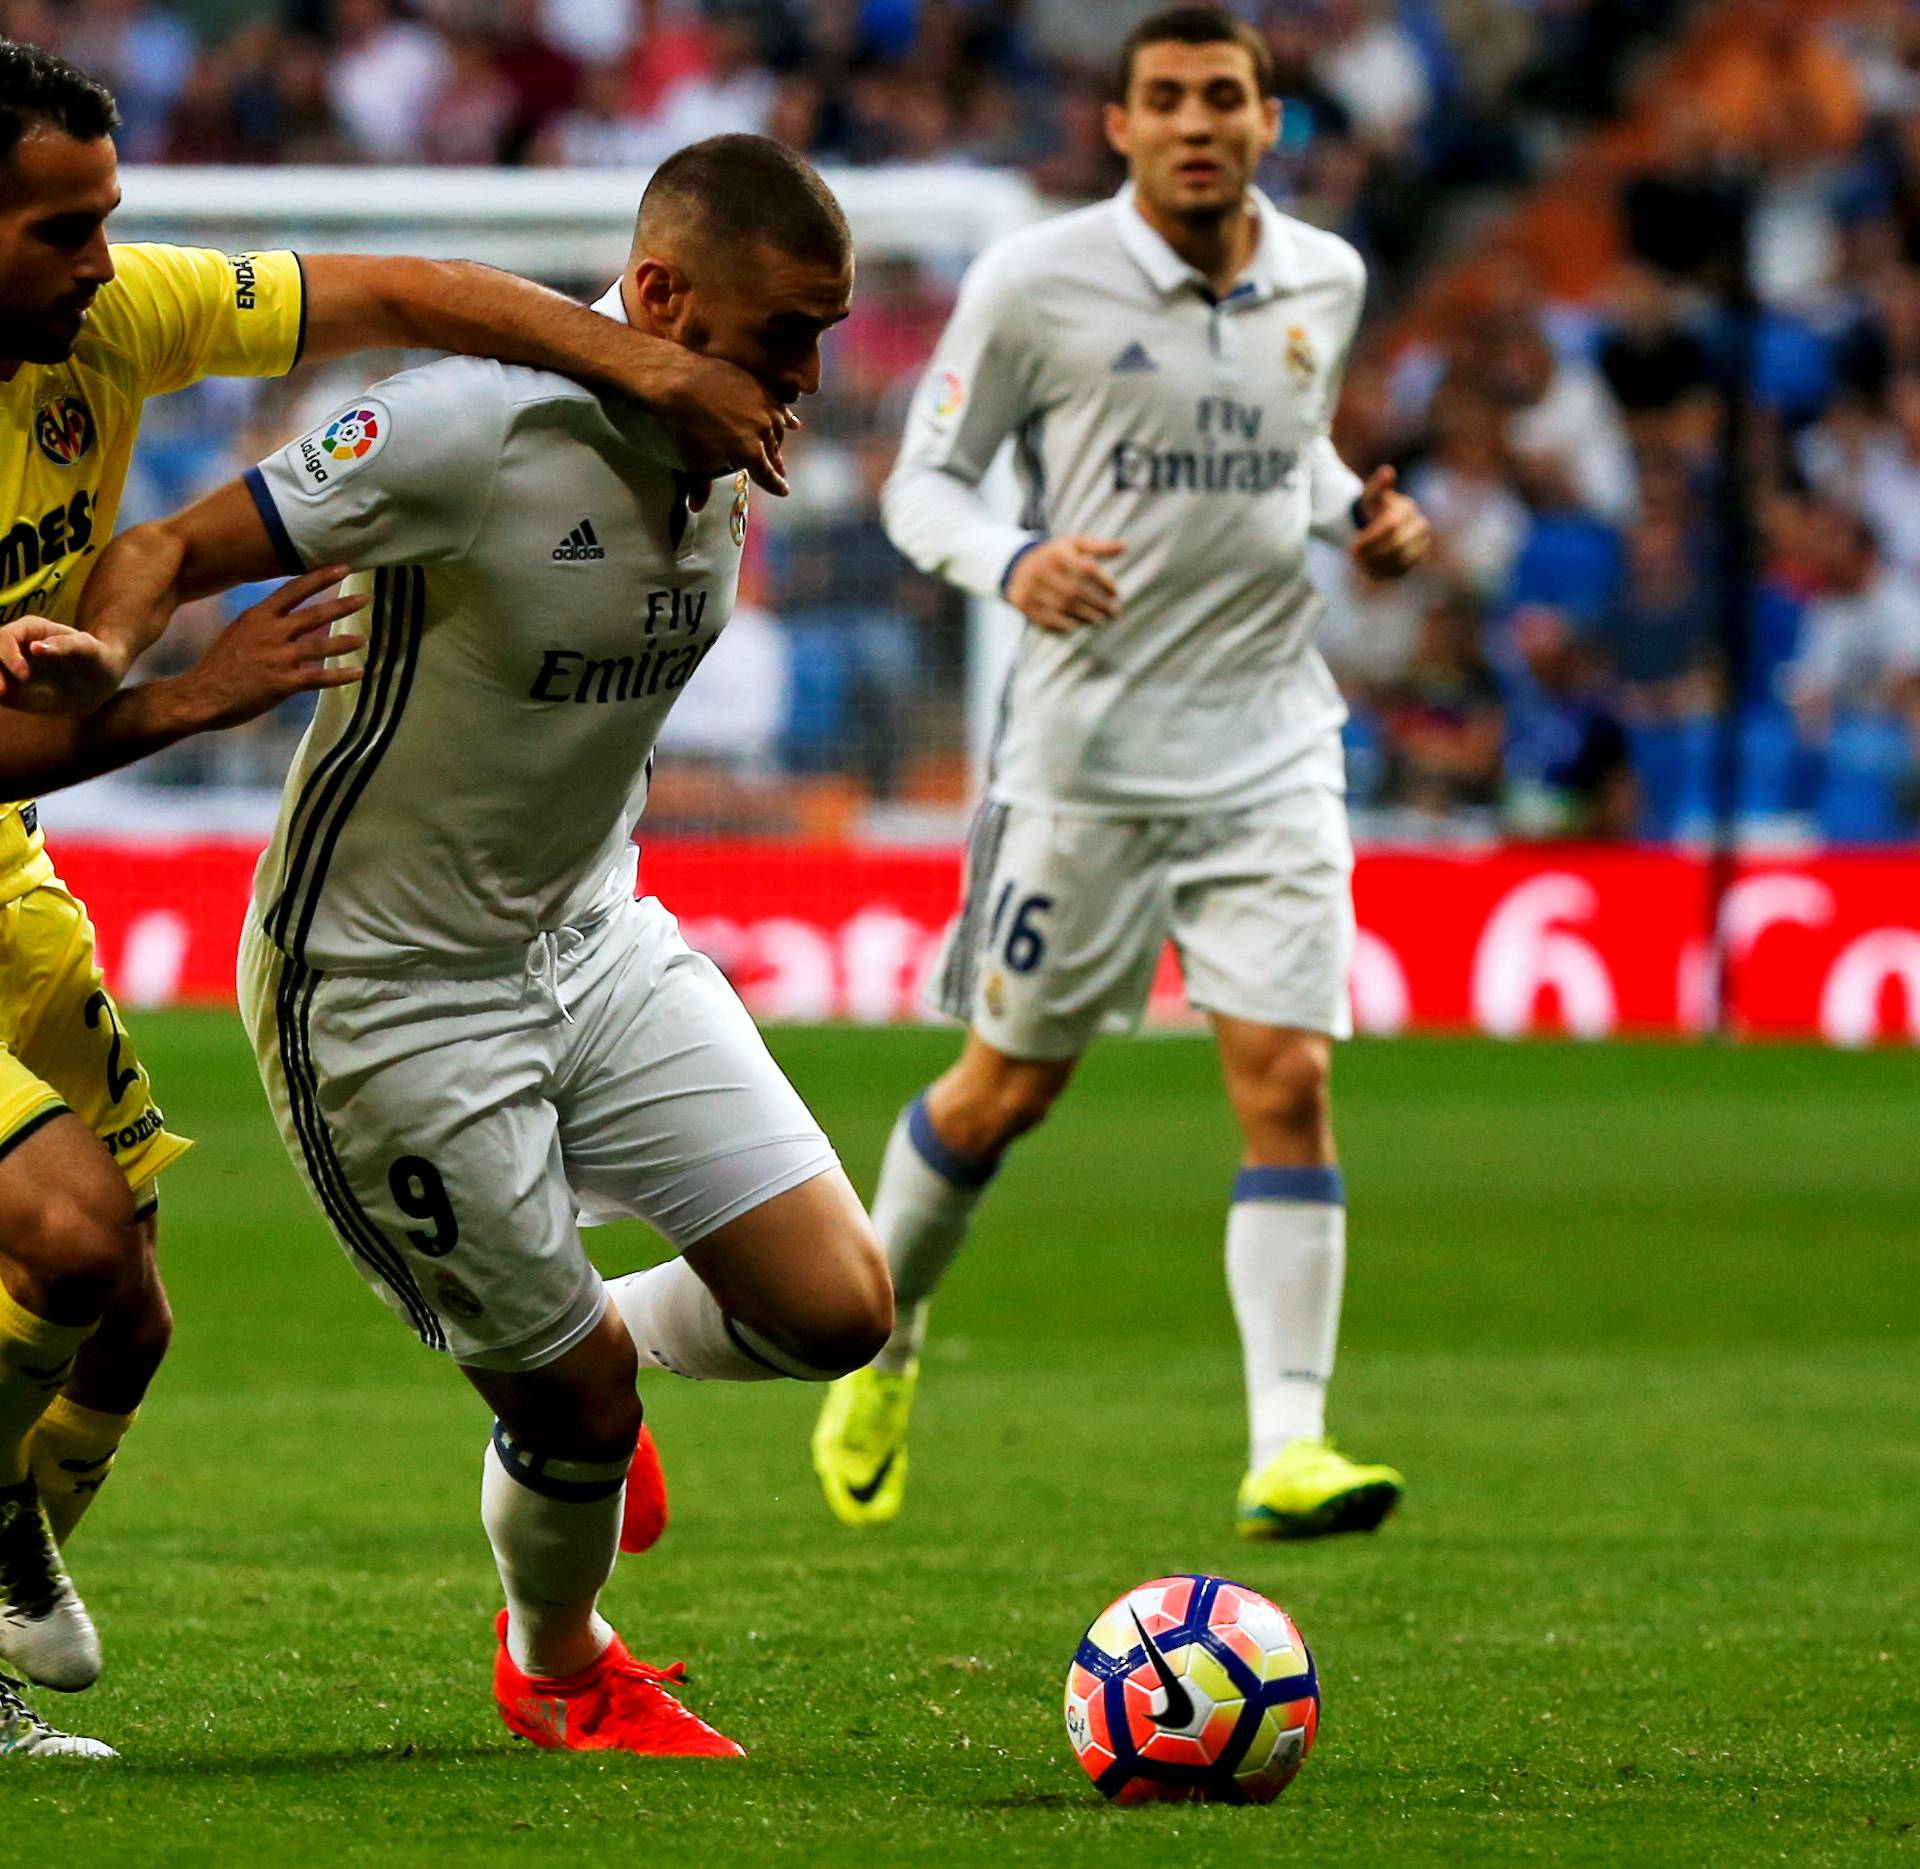 Football Soccer - Real Madrid v Villarreal - Spanish Liga Santander 